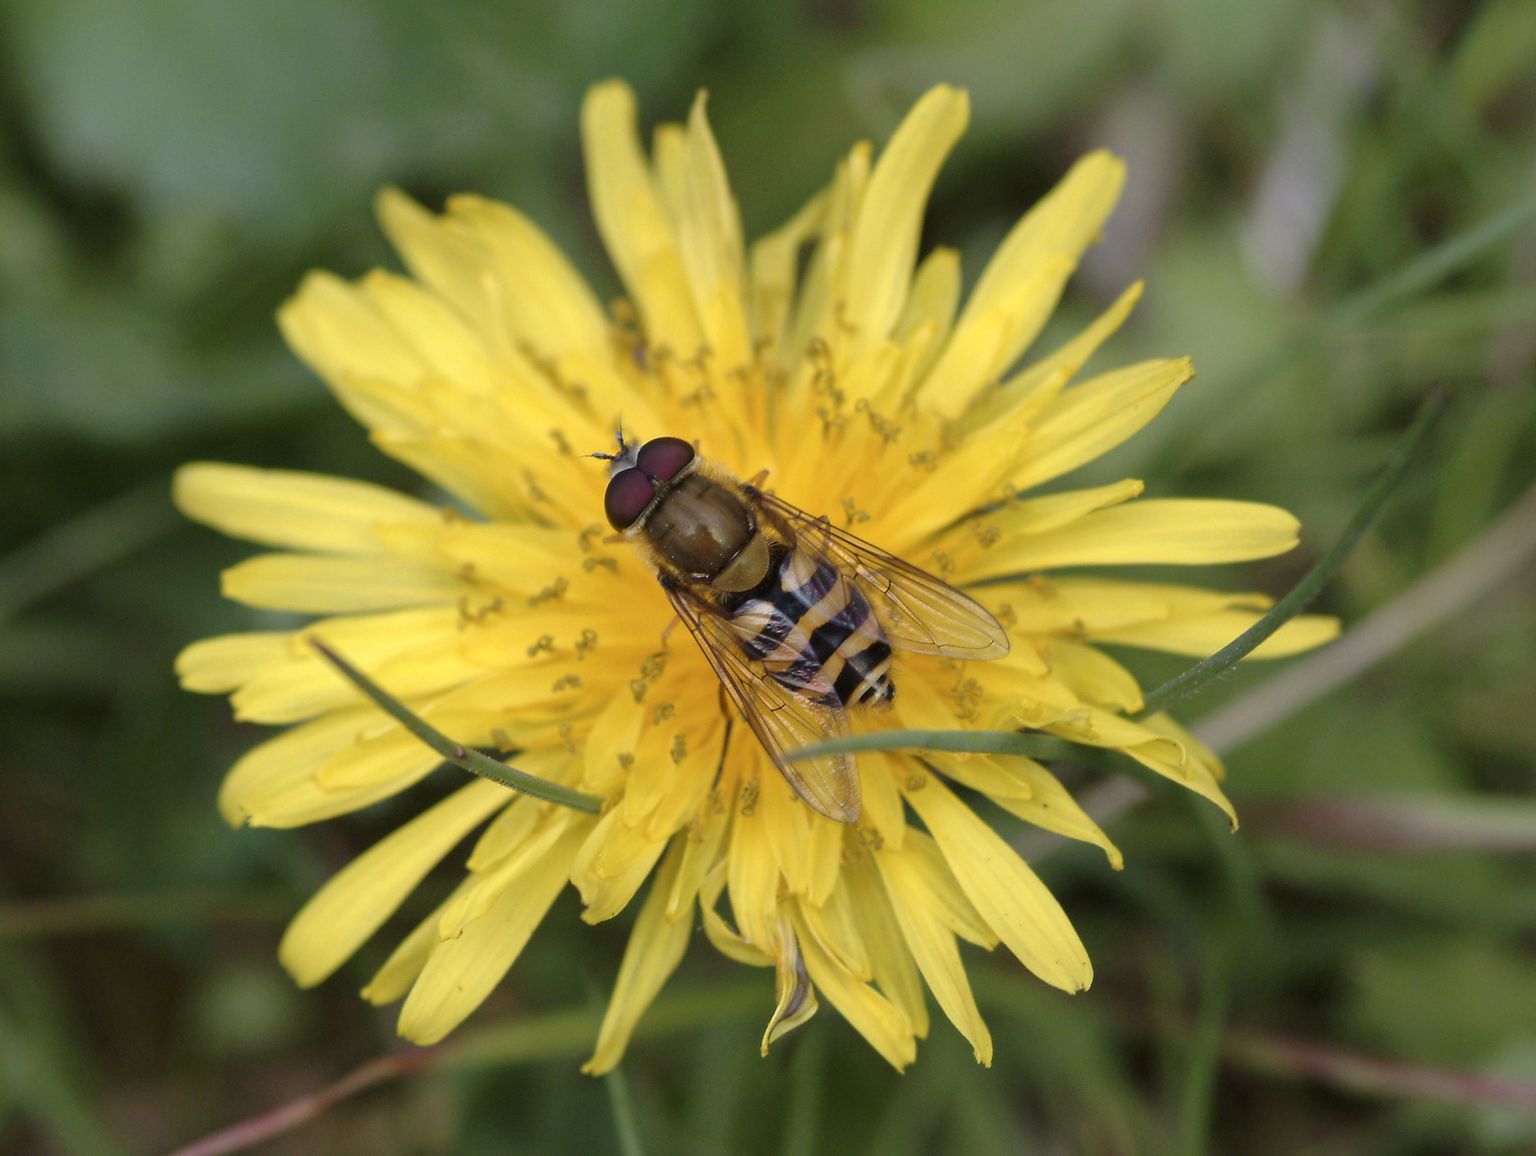 Sirelasi, kes maskeerivad ennast mesilaste sarnaseks, ohustavad samad viirused kui mesilinde